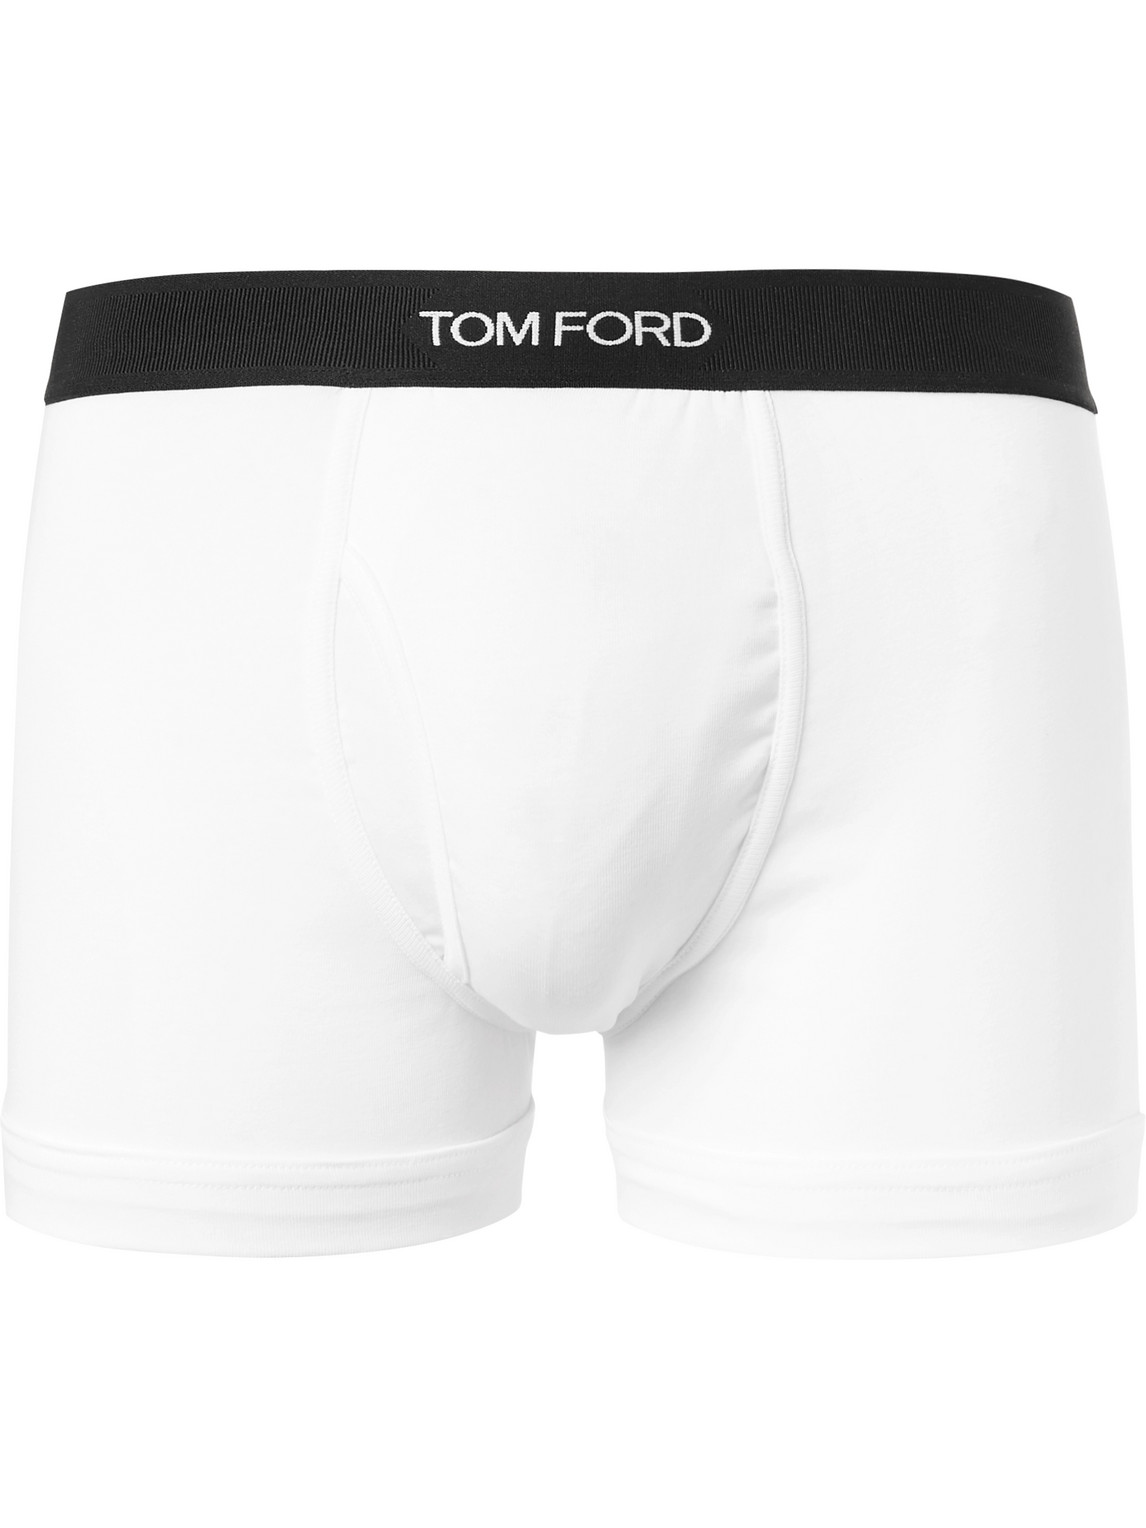 TOM FORD Stretch Cotton Boxer Briefs, Underwear